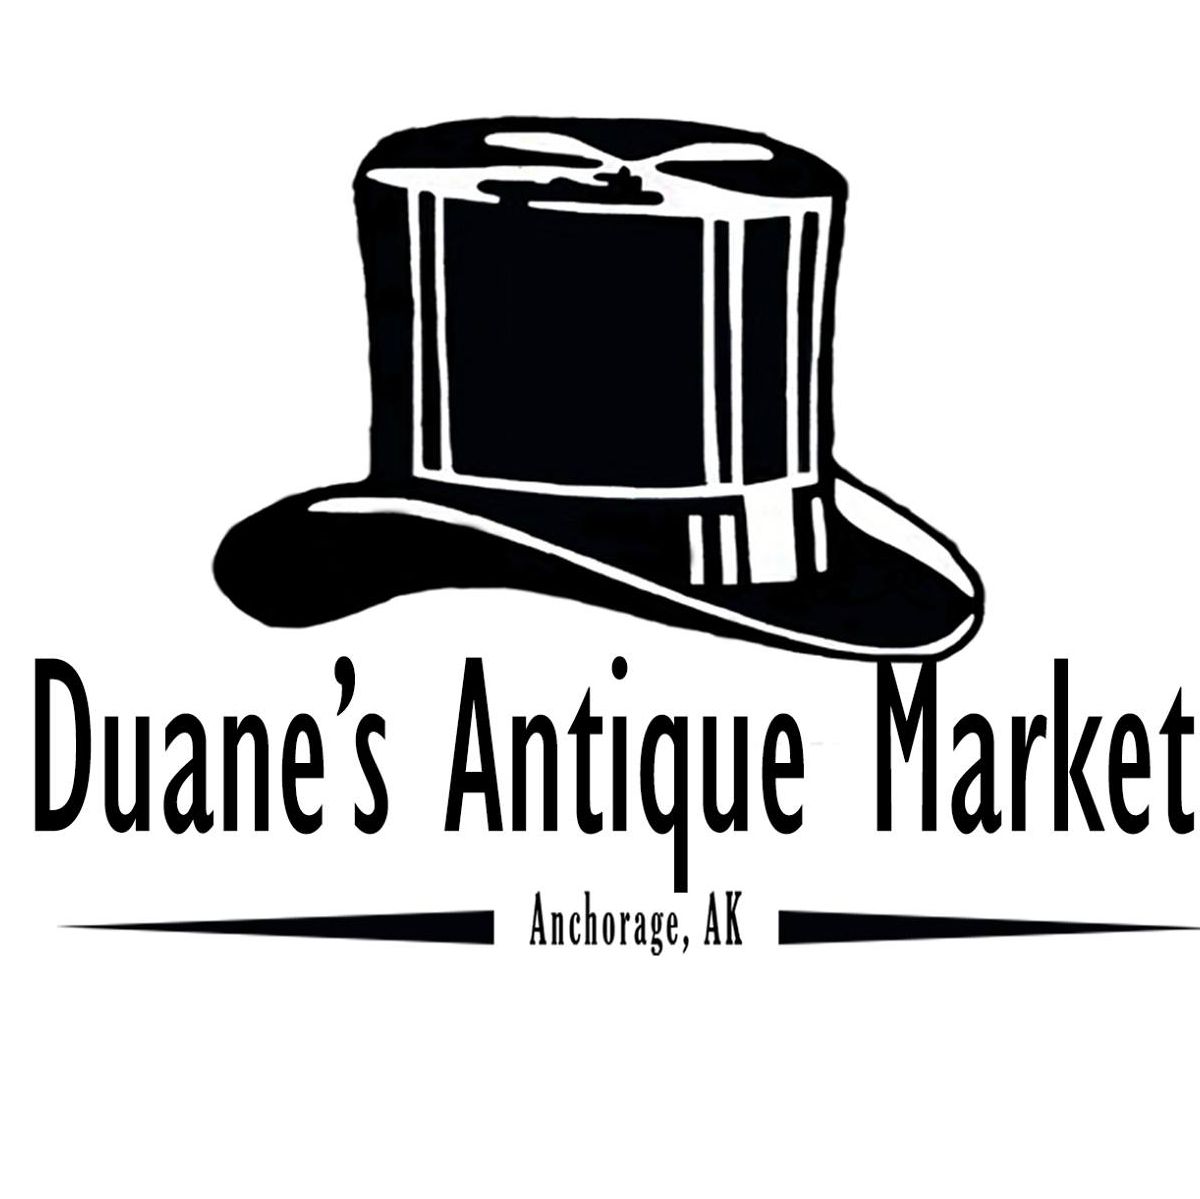 Duane's Antique Market